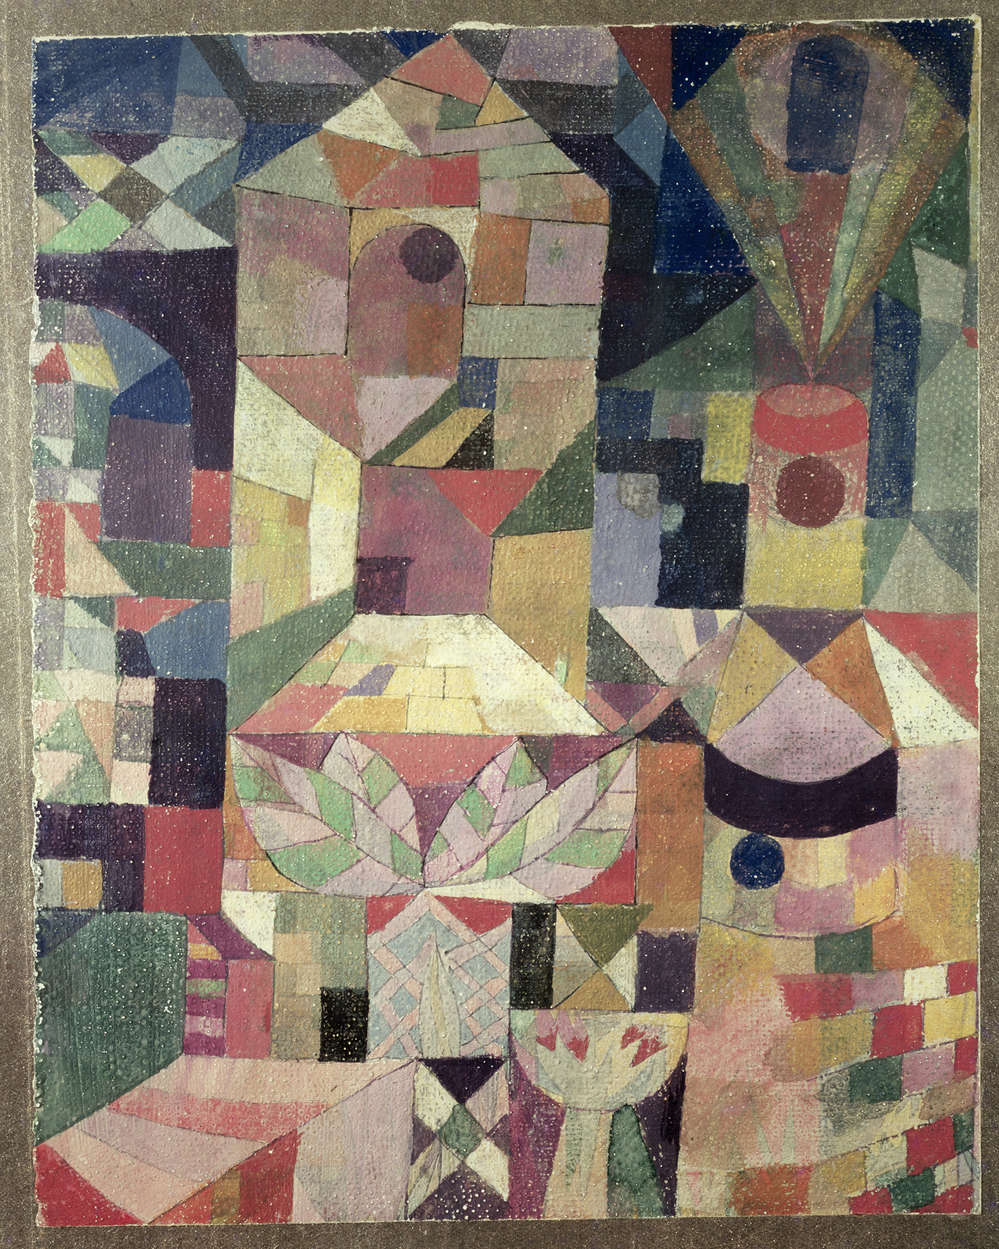             Photo wallpaper "Castle garden" by Paul Klee
        